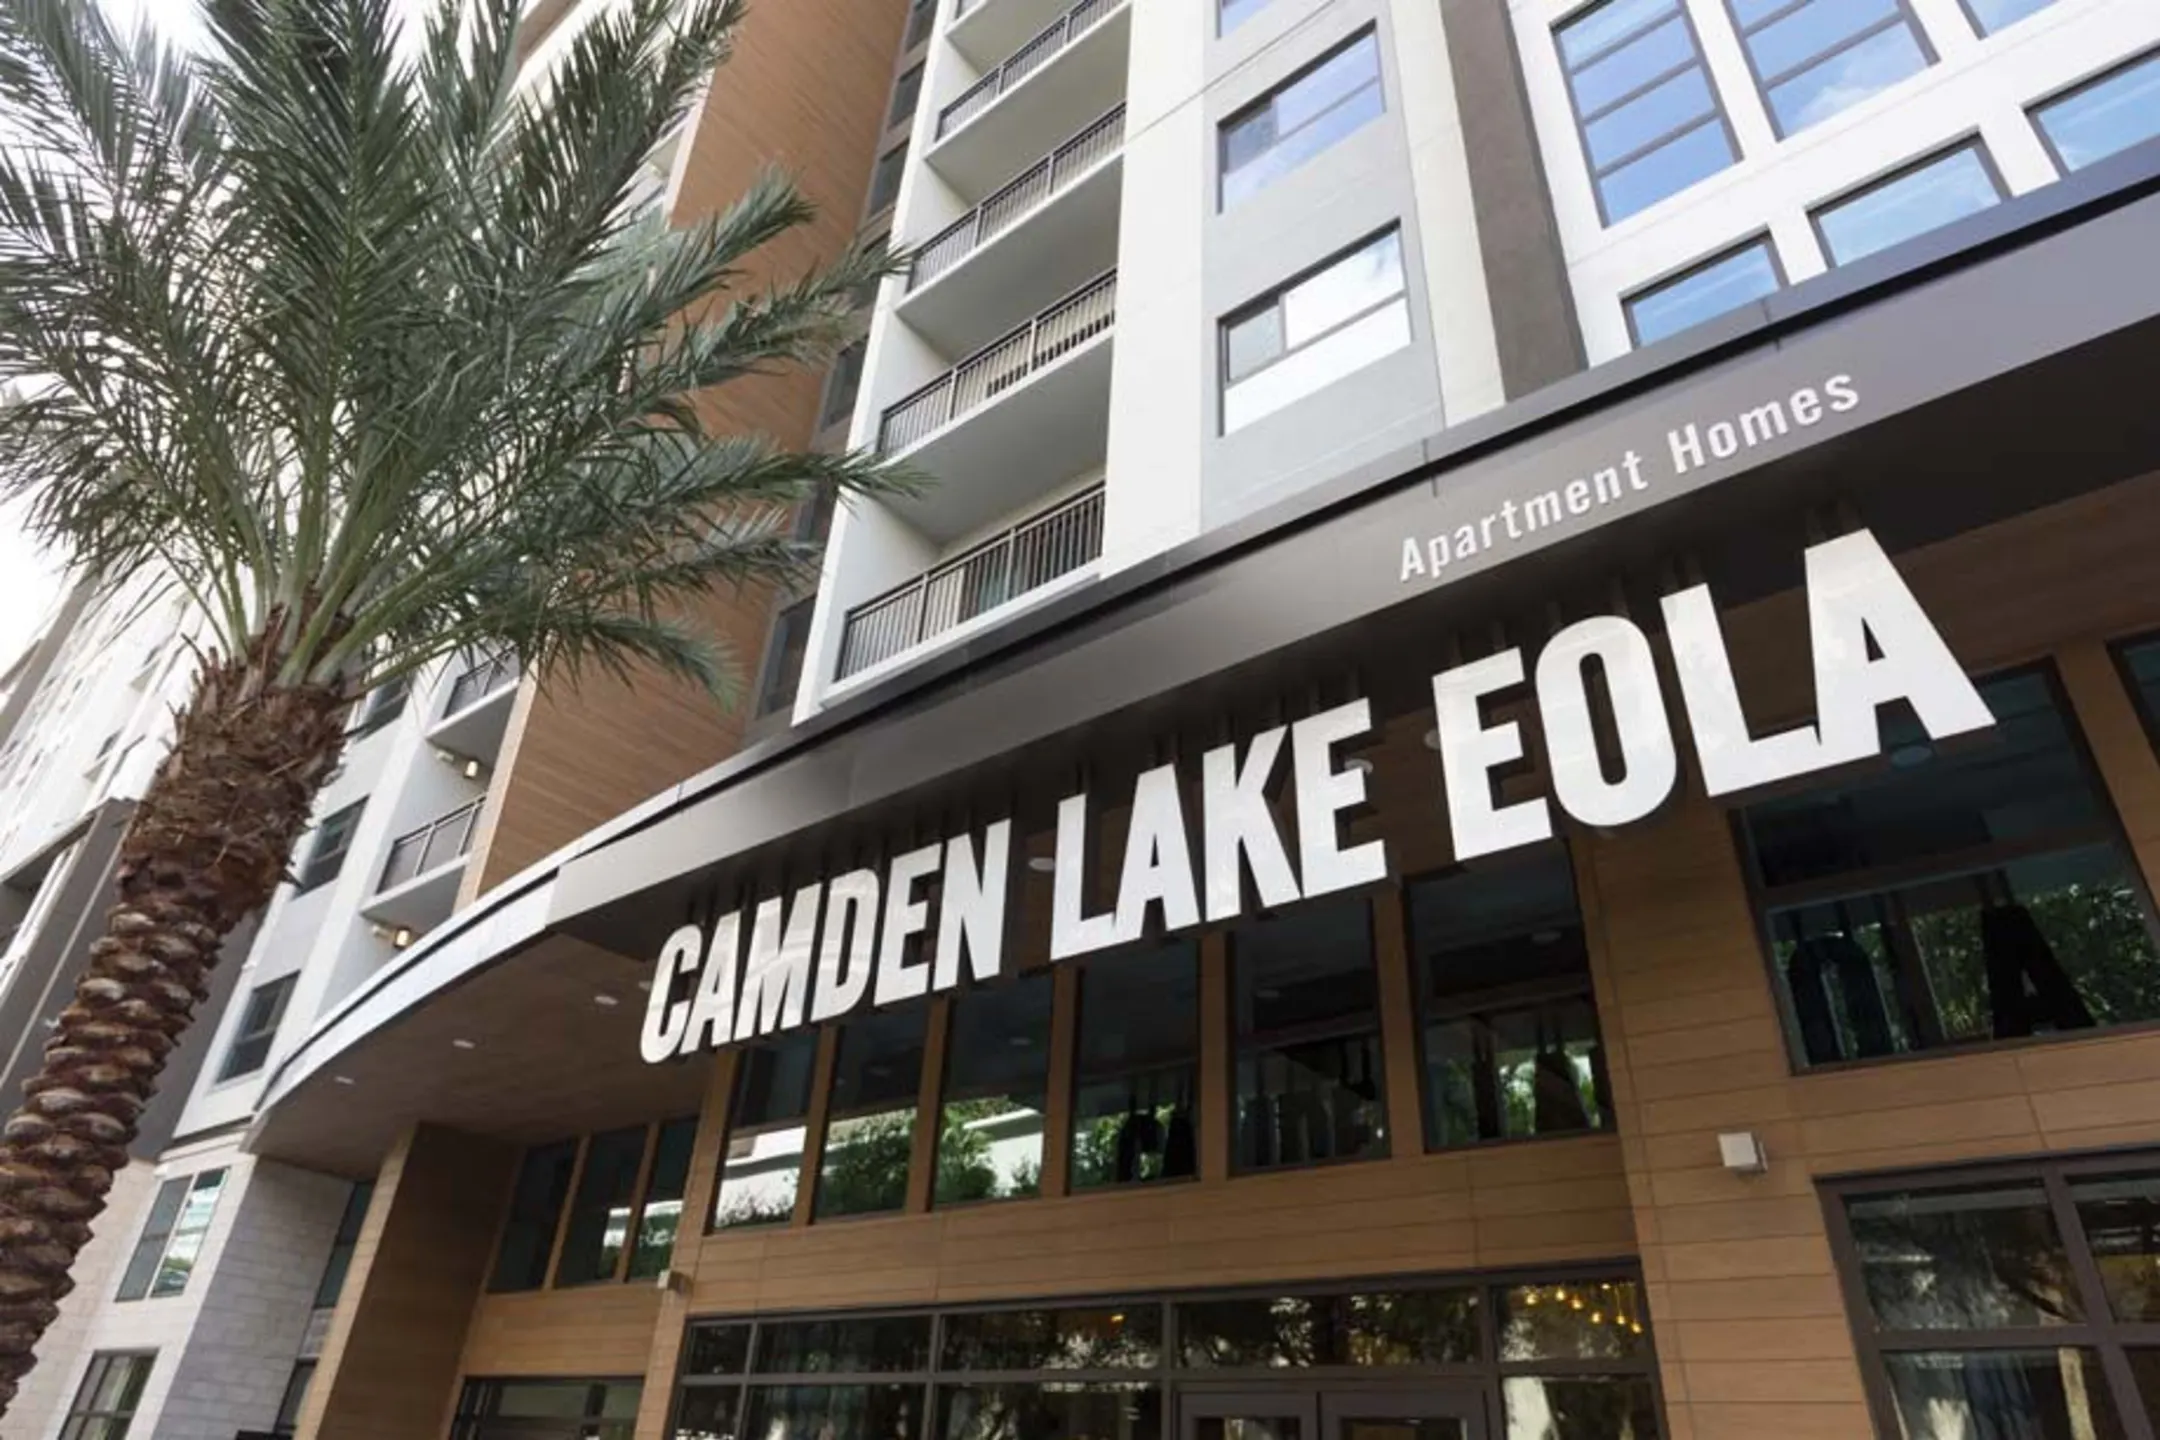 Building - Camden Lake Eola - Orlando, FL